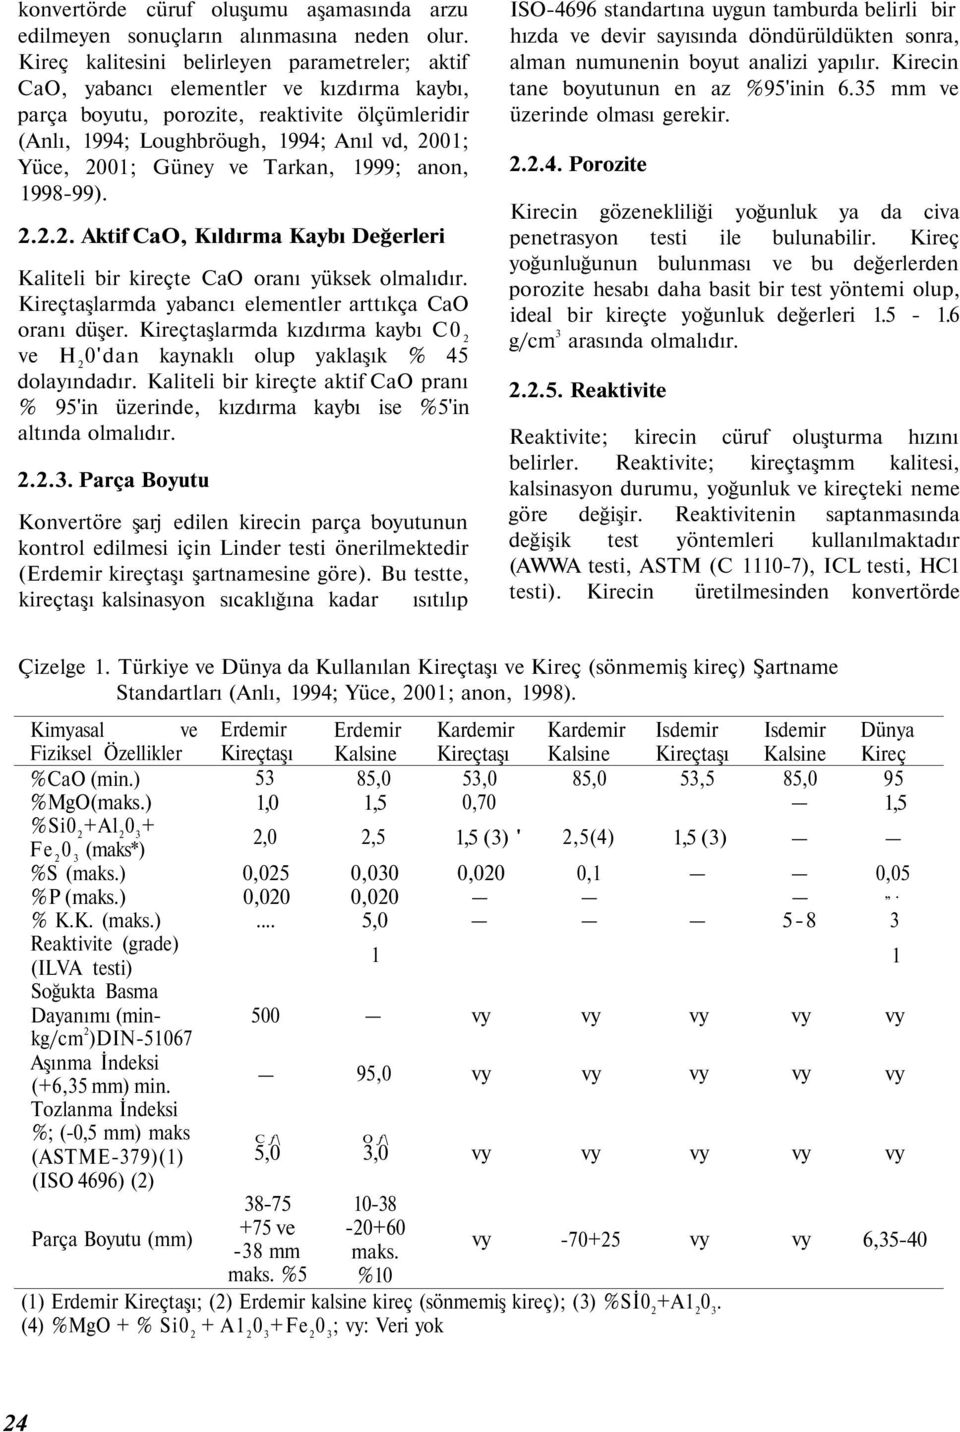 Güney ve Tarkan, 1999; anon, 1998-99). 2.2.2. Aktif CaO, Kıldırma Kaybı Değerleri Kaliteli bir kireçte CaO oranı yüksek olmalıdır. Kireçtaşlarmda yabancı elementler arttıkça CaO oranı düşer.